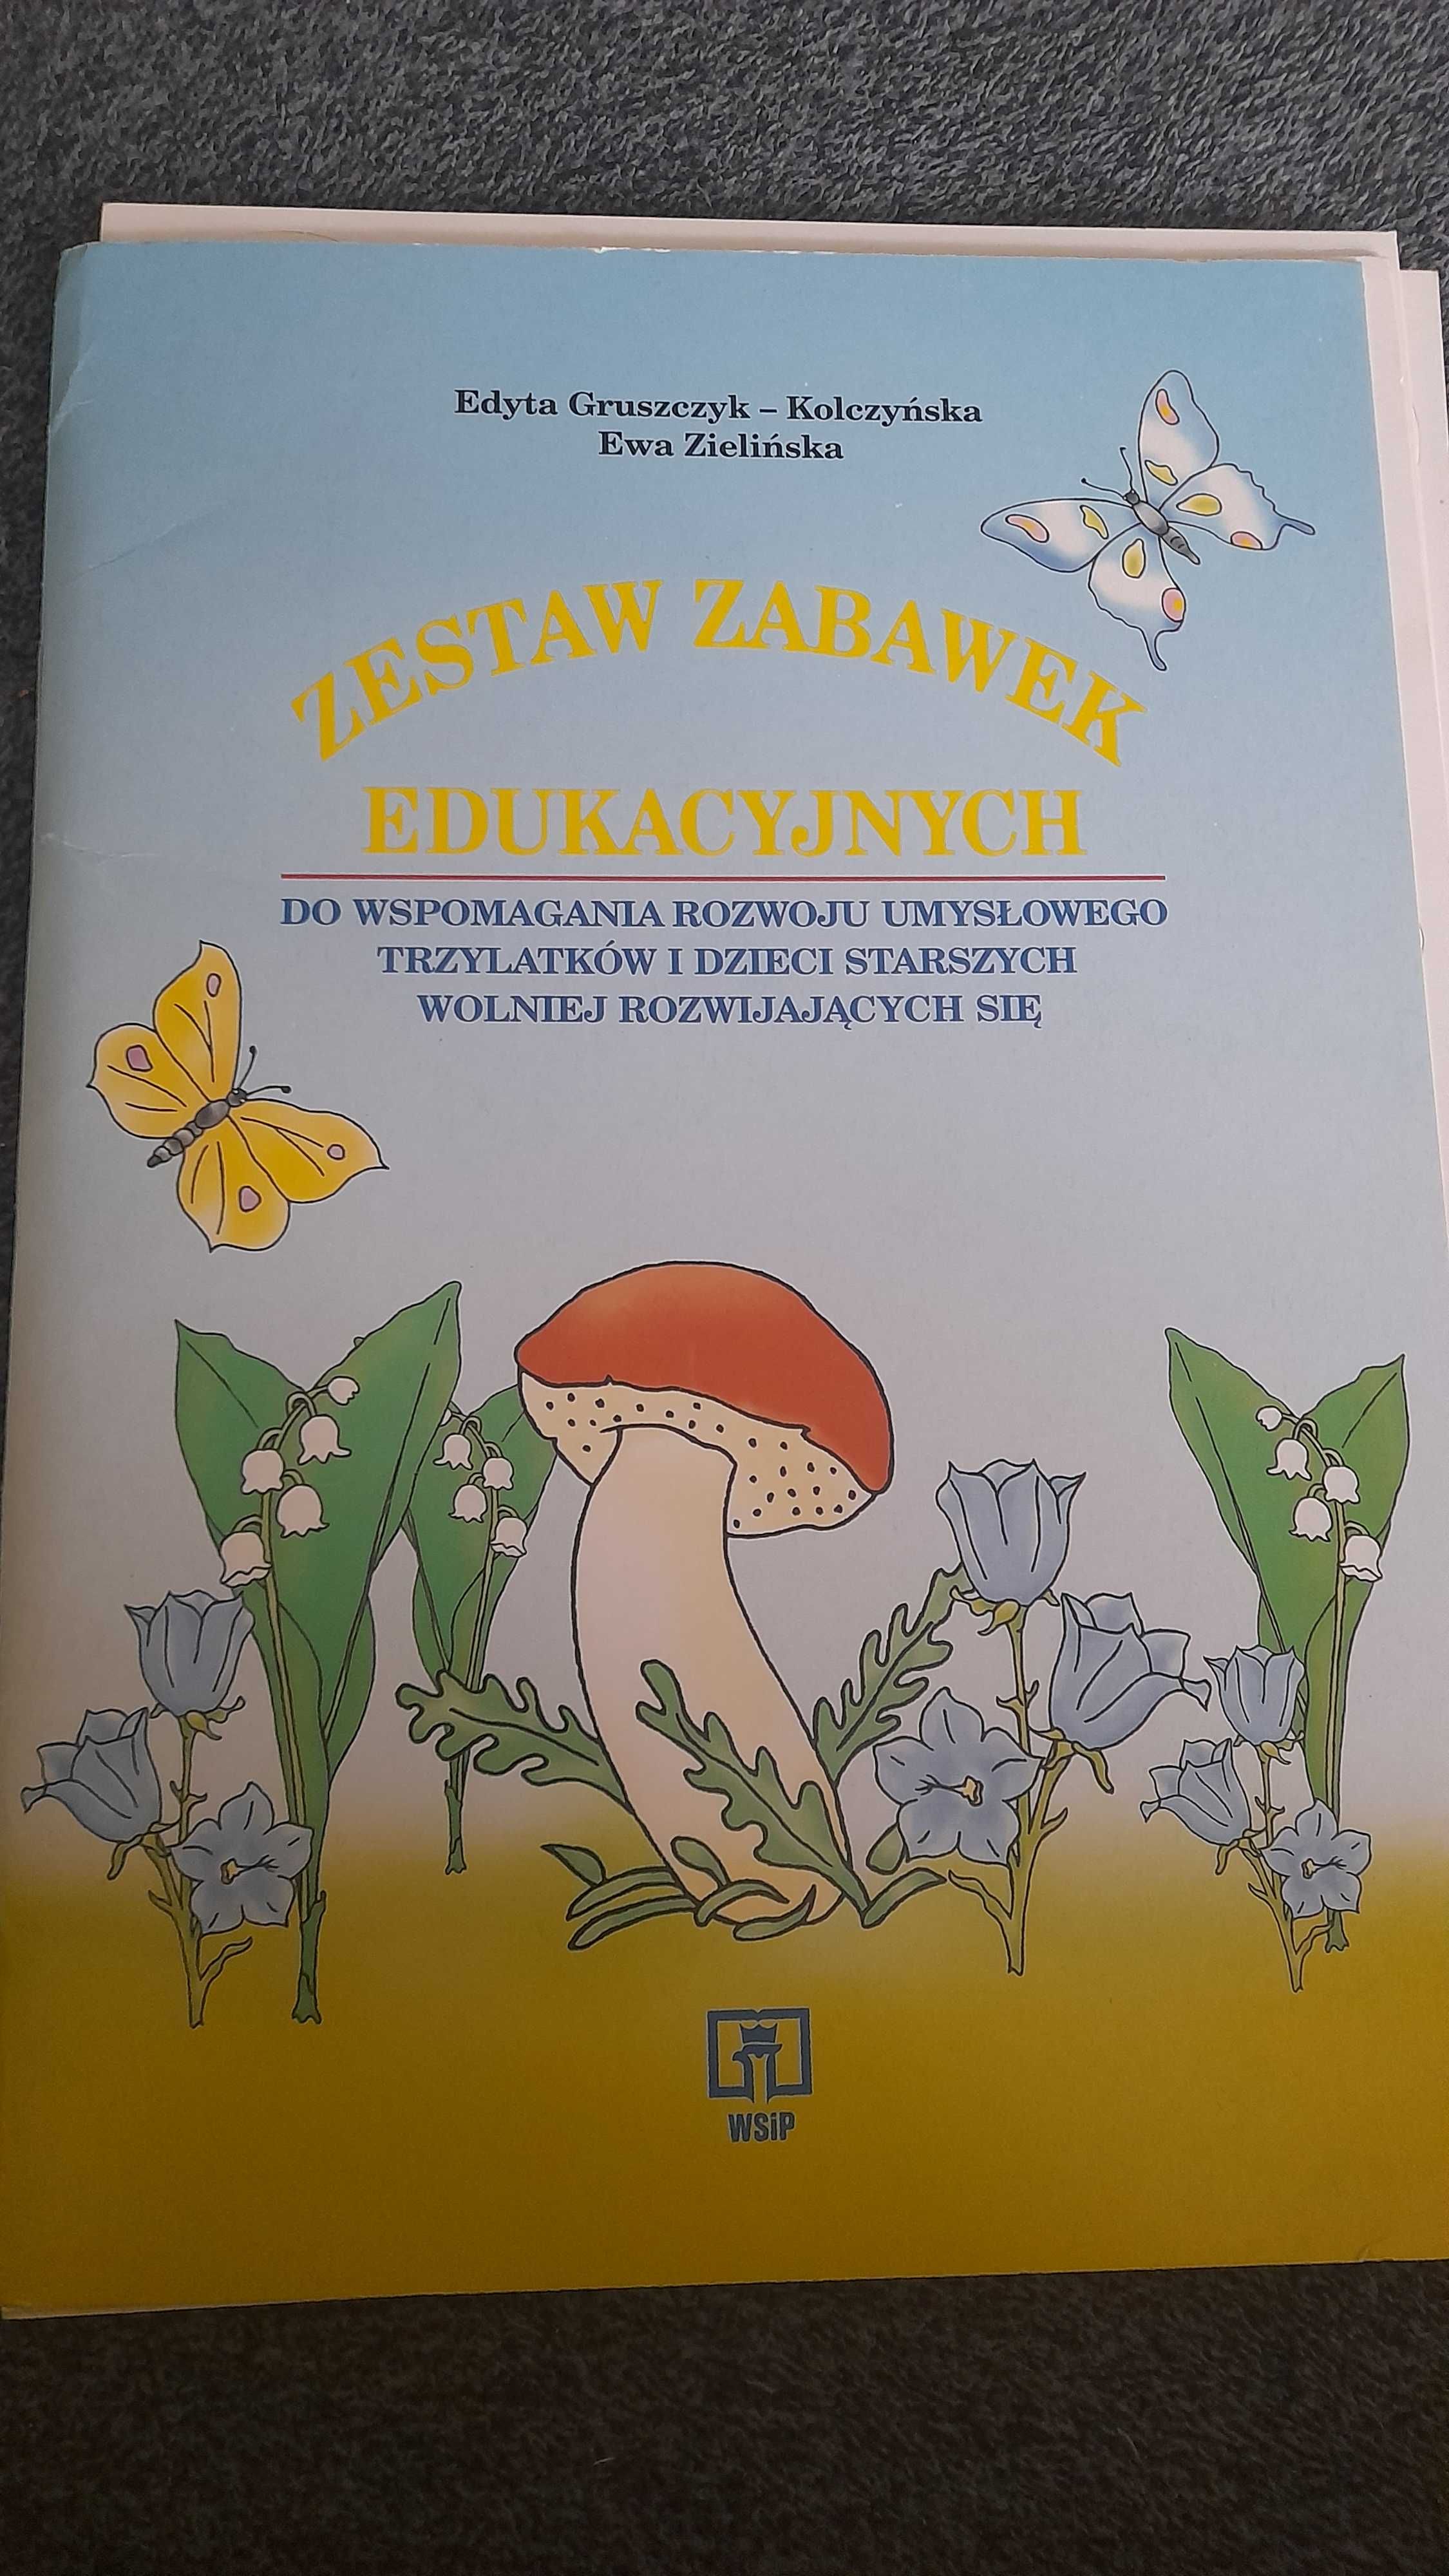 Książka zestaw zabawek edukacyjnych Edyta Gruszczyk-Kolczyńska